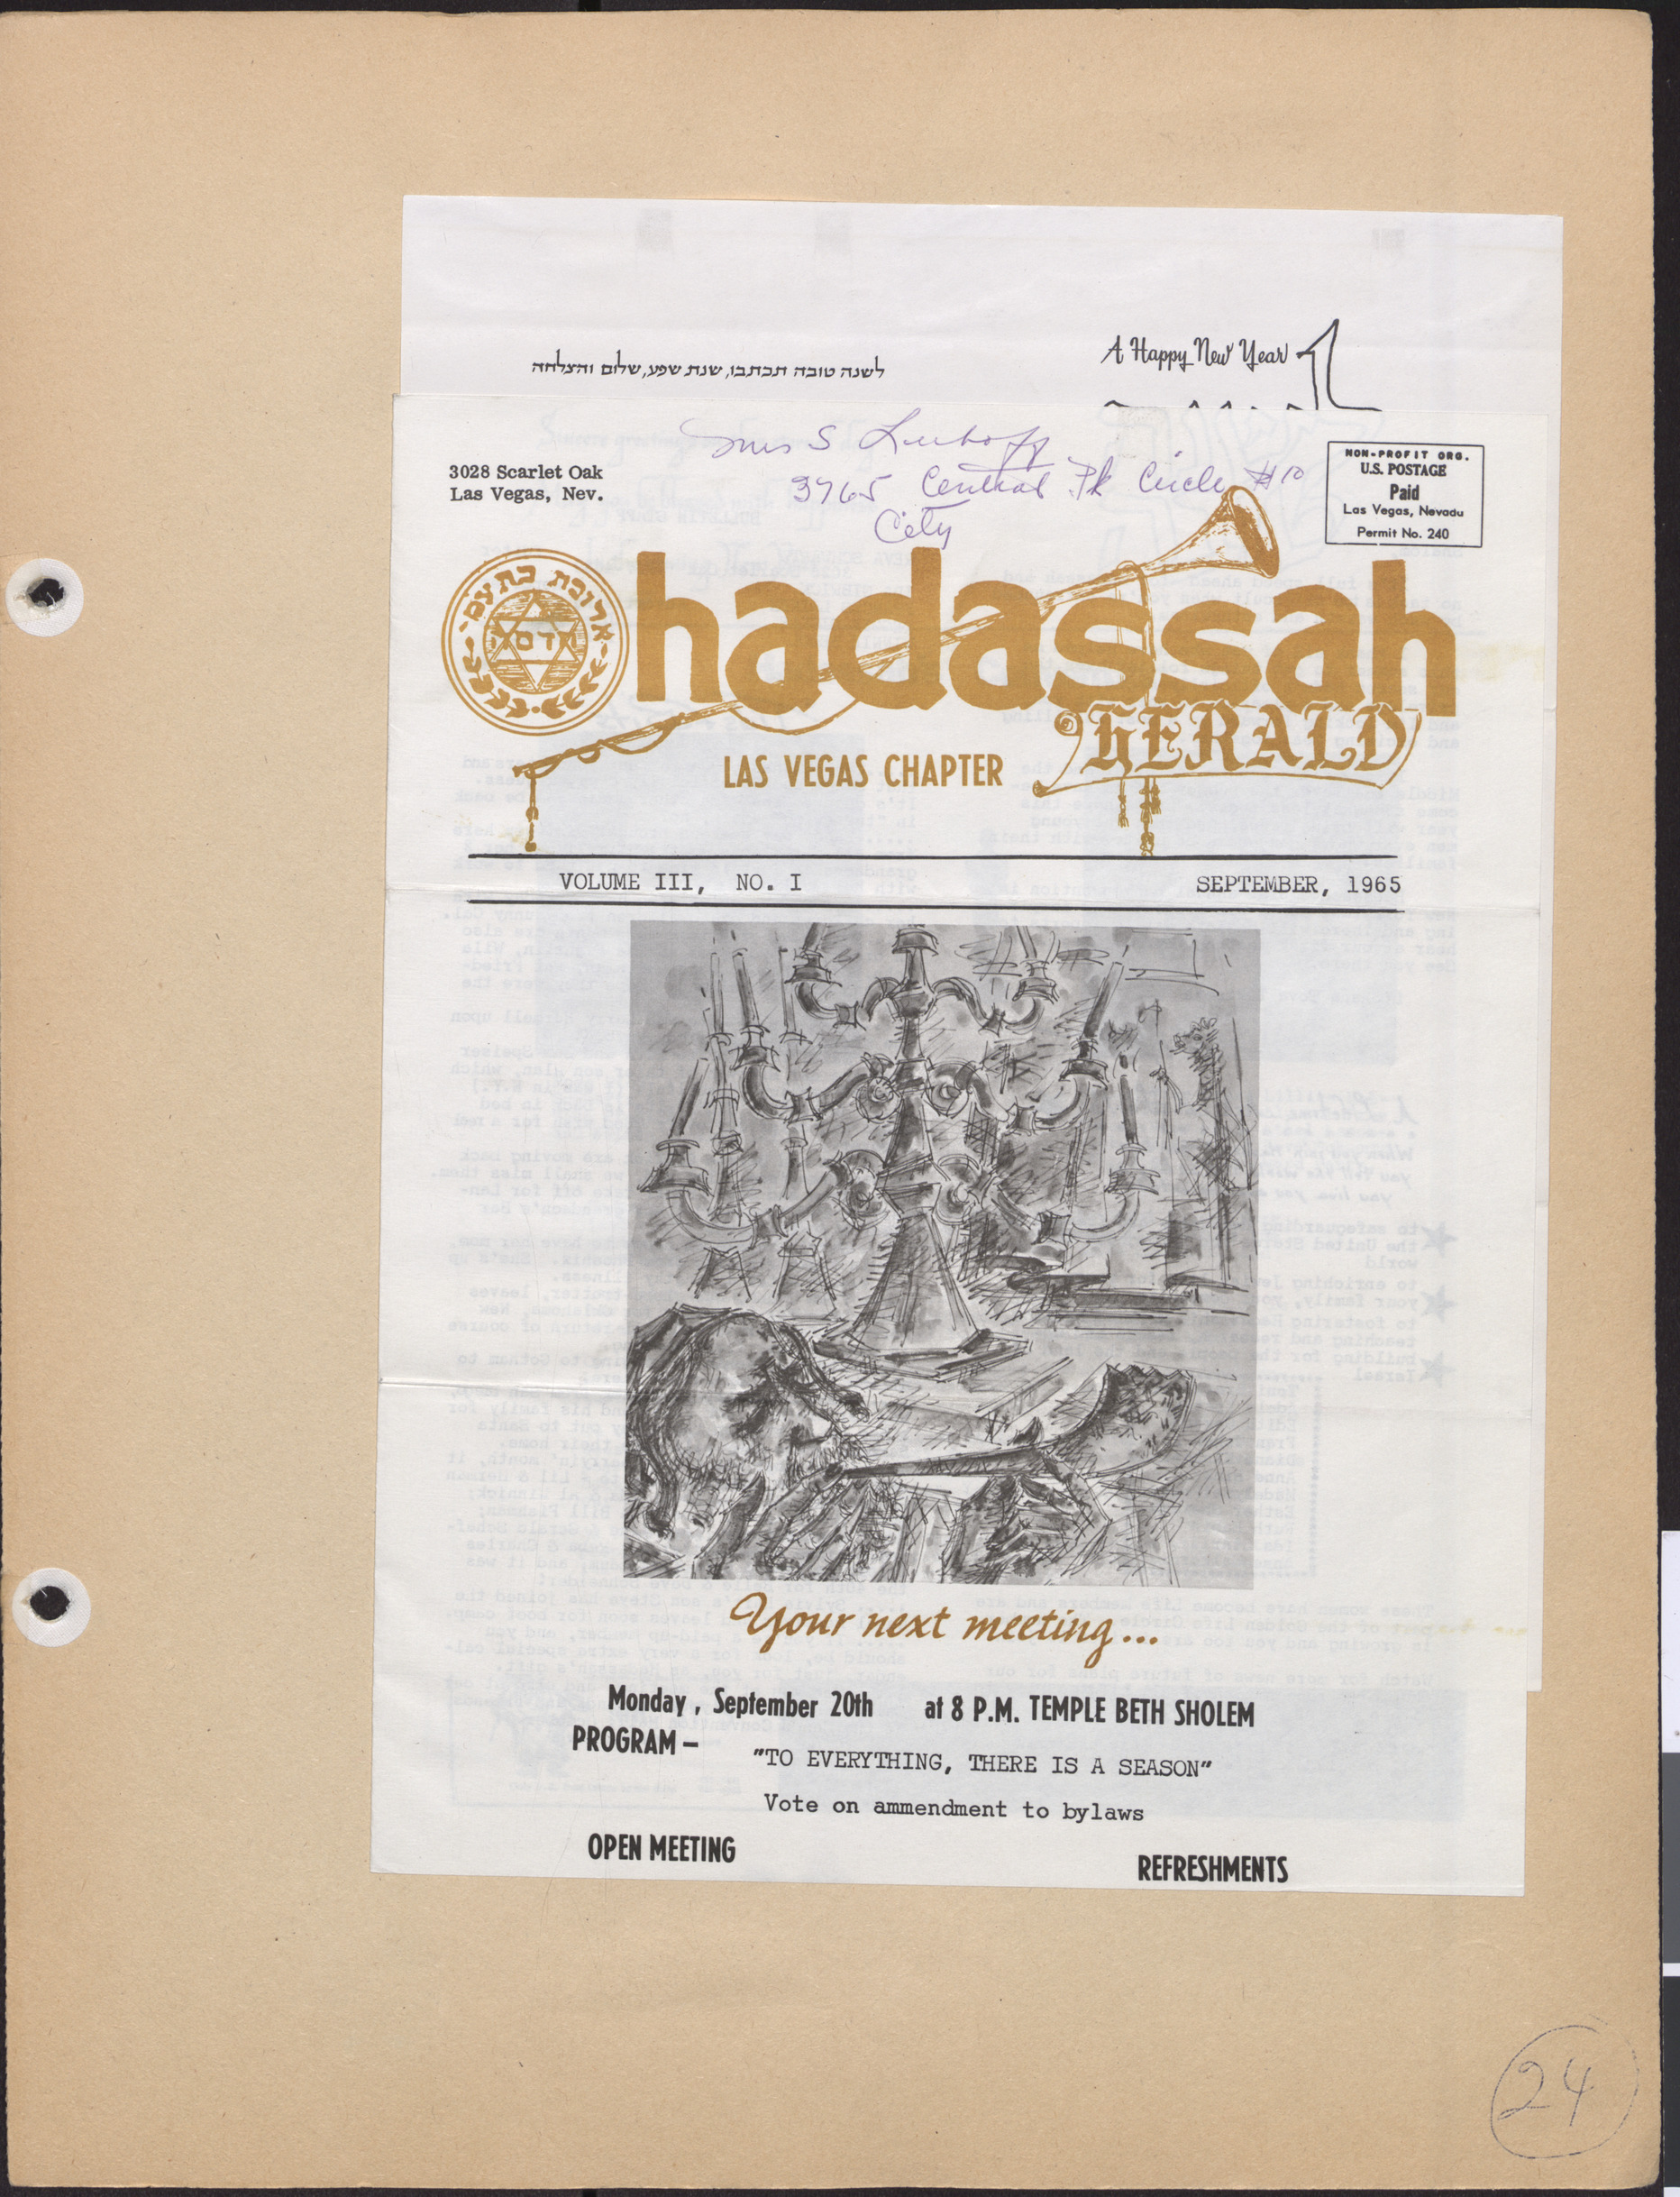 Hadassah Las Vegas Chapter newsletter, September 1965, cover